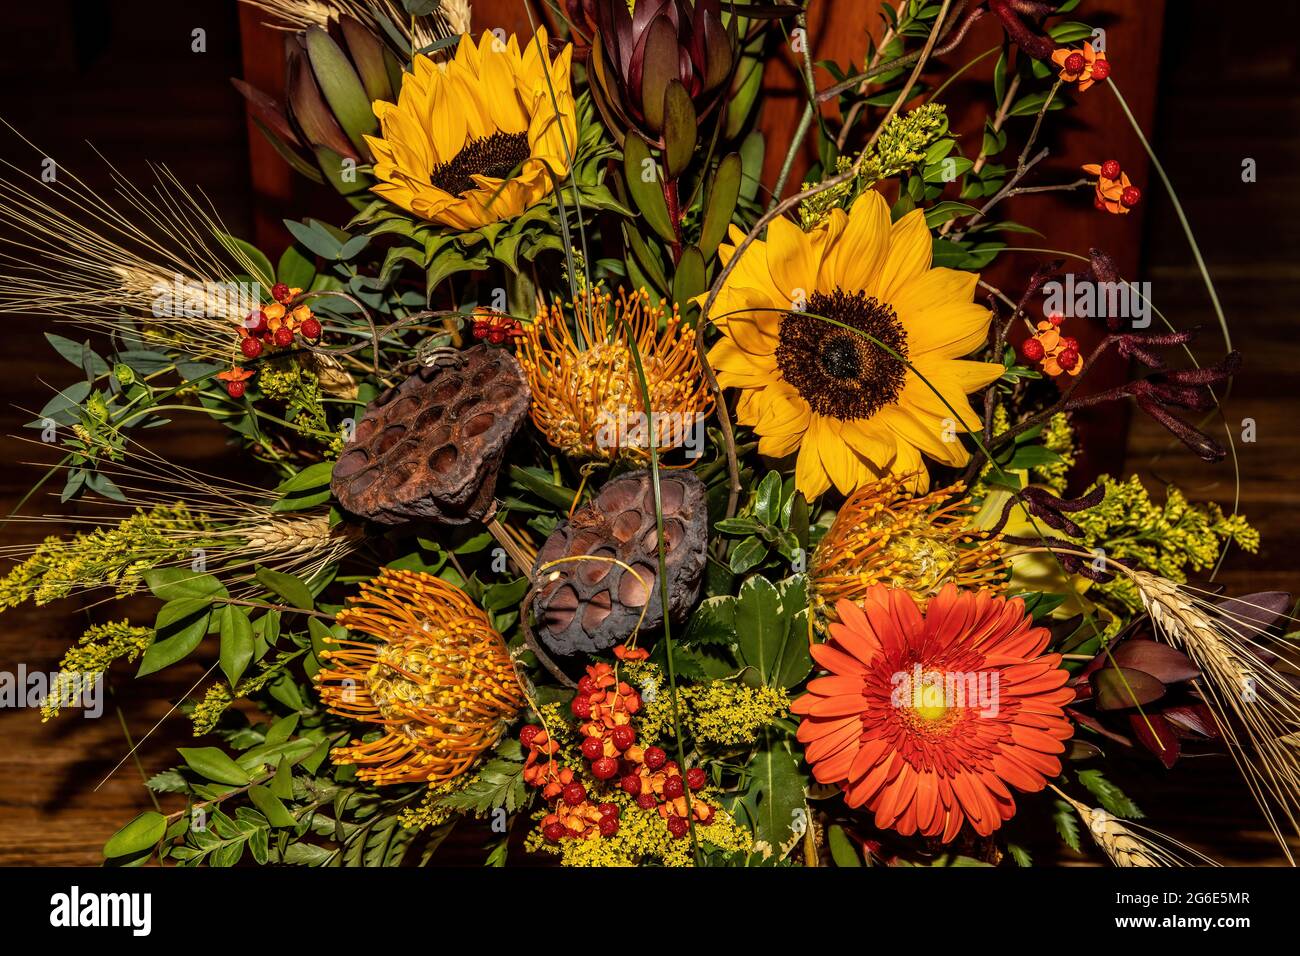 Closeup of a fall floral flower arrangement. Stock Photo